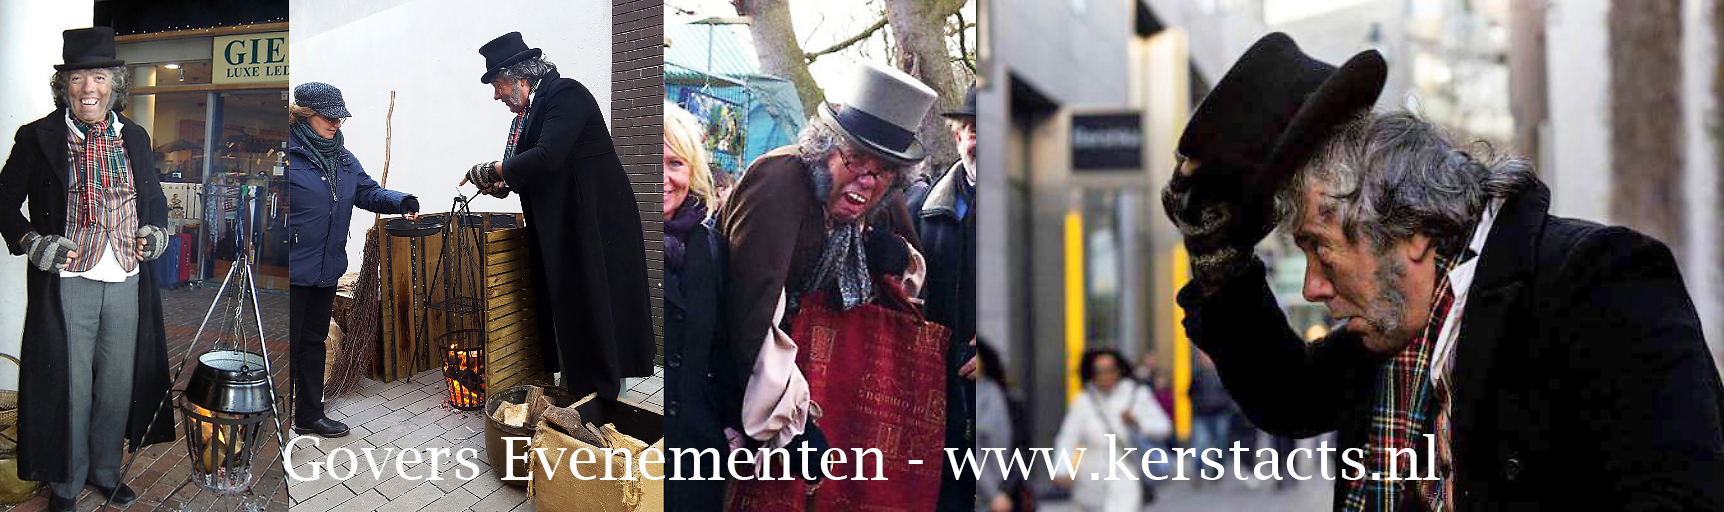 Scrooge acteur, kerst entertainment boeken bij Govers Evenementen, www.kerstacts.nl